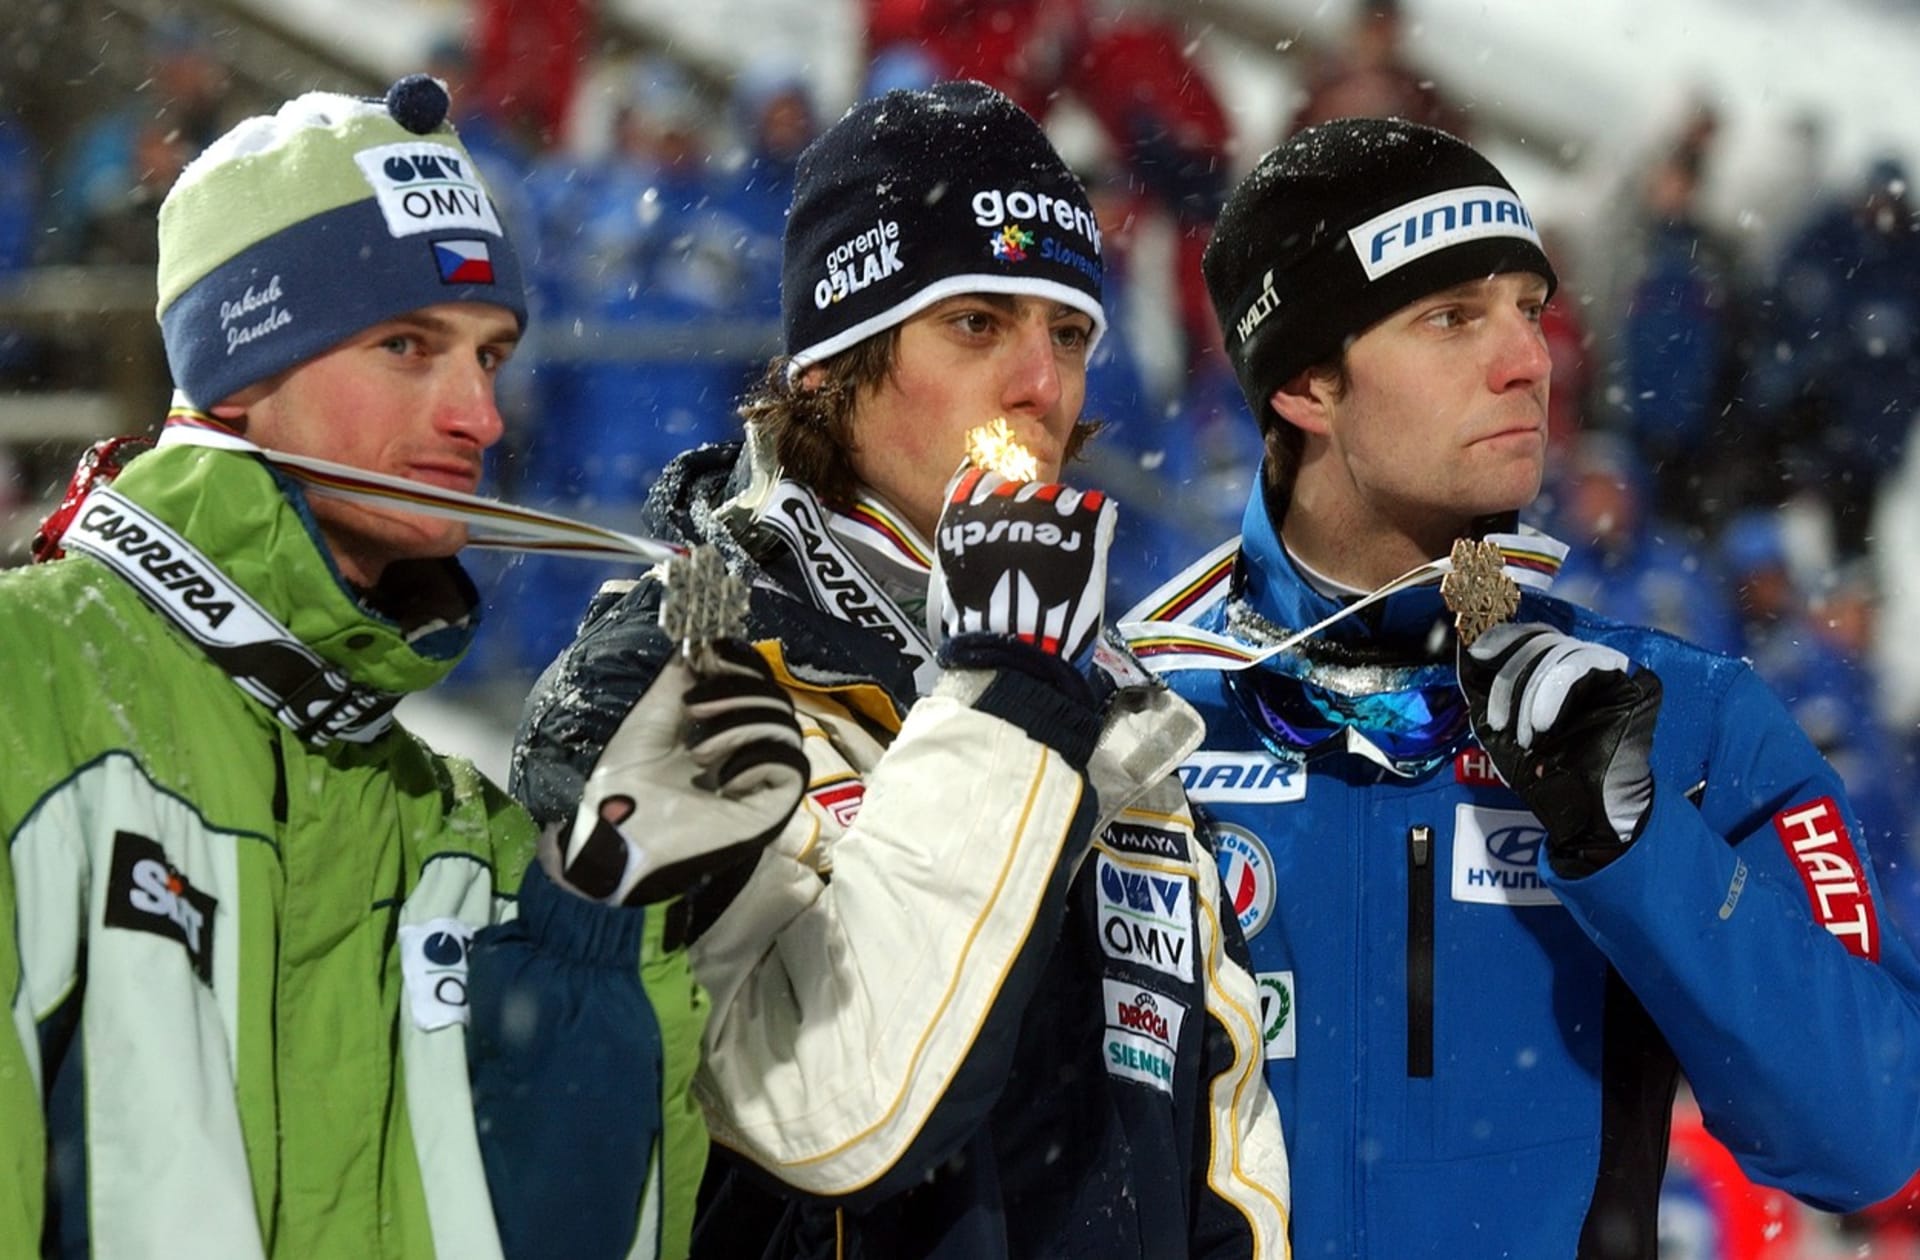 Medailisté ze středního můstku. Zleva Jakub Janda (stříbro), Rok Benkovič (zlato) a Janne Ahonen (bronz)